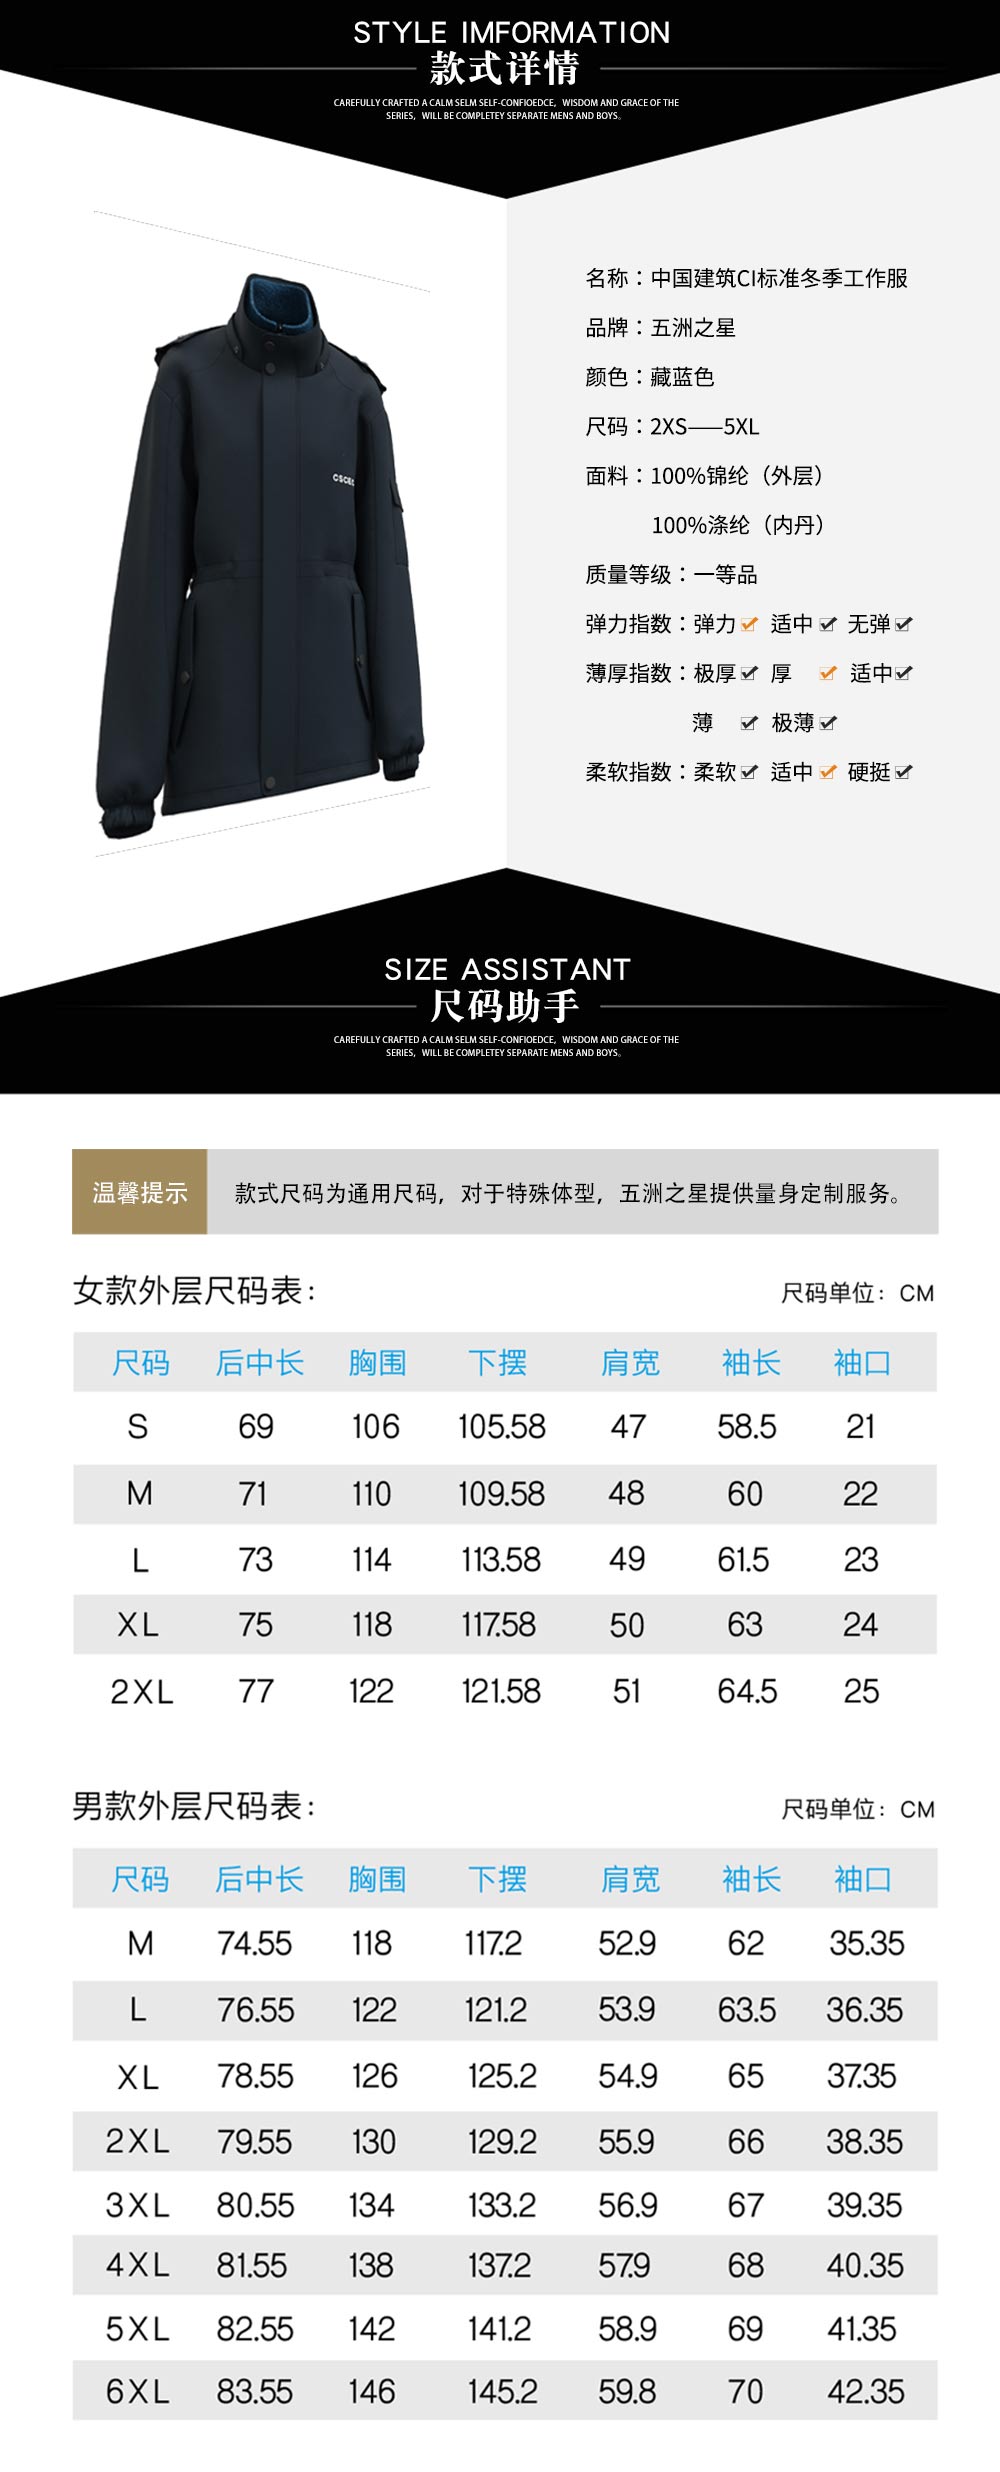 中国建筑CI标准冬季工作服—款式详情、尺寸尺码